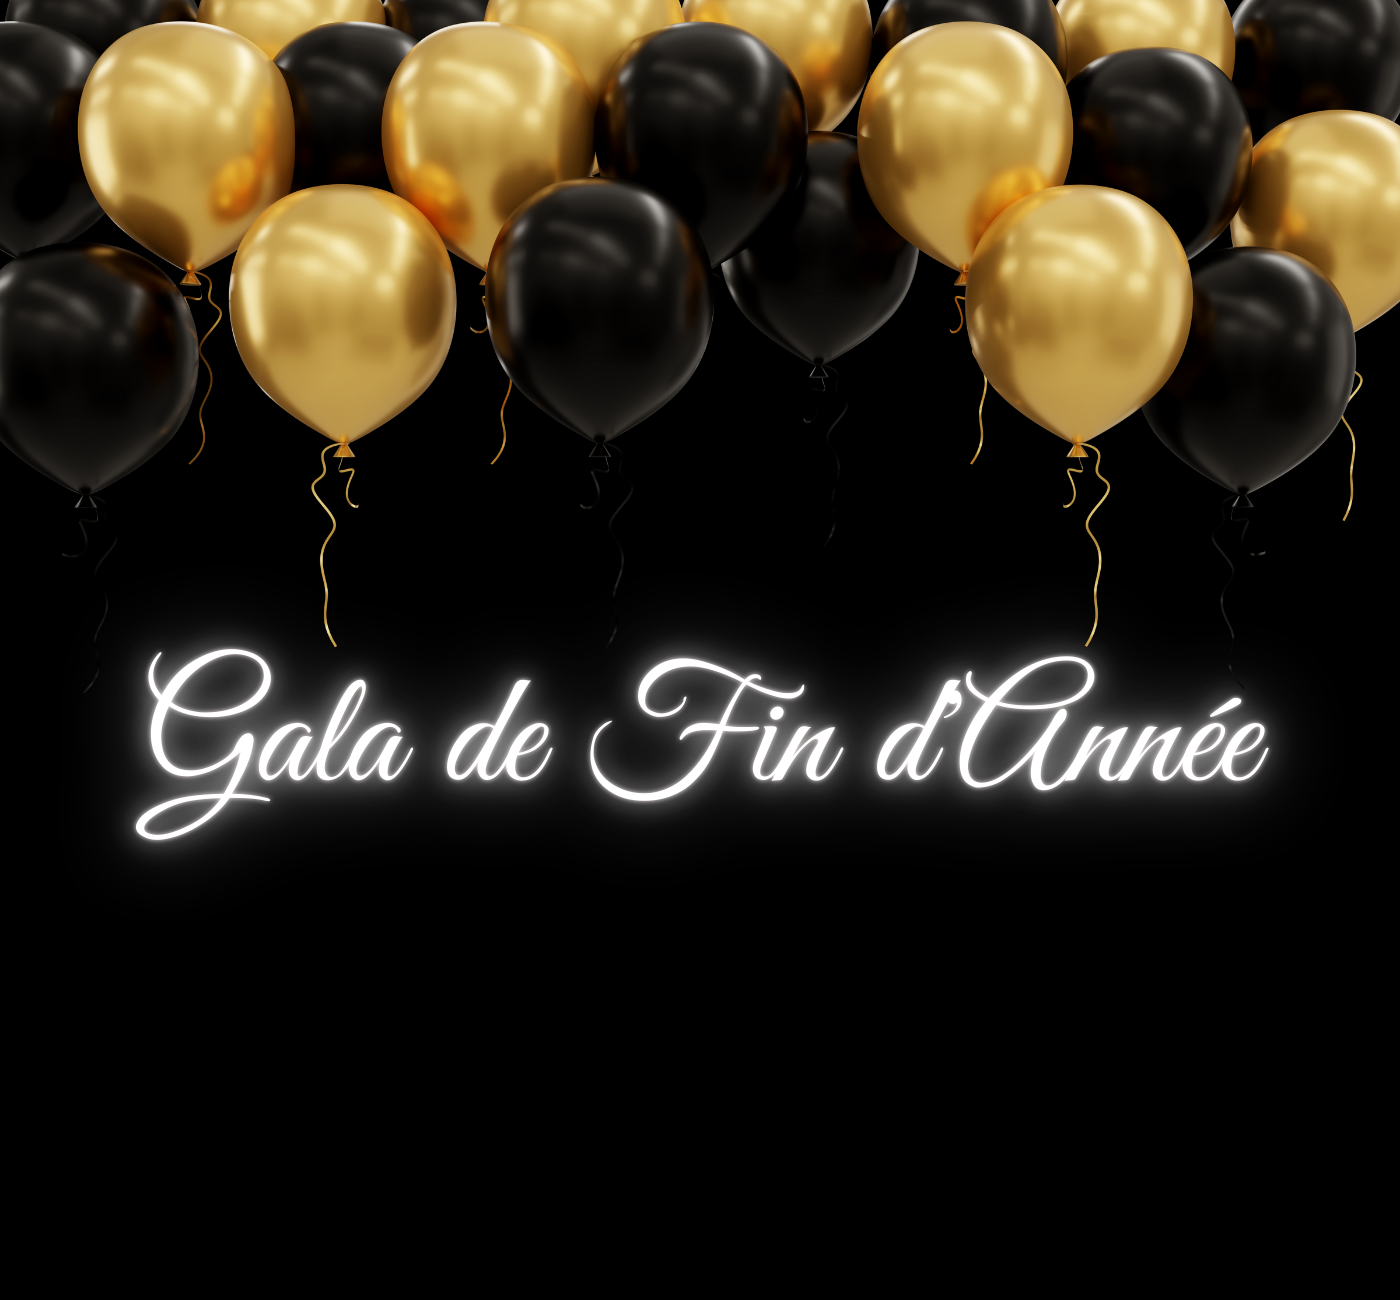 Ballons noirs et dorés avec un texte disant "Gala de fin d'année".